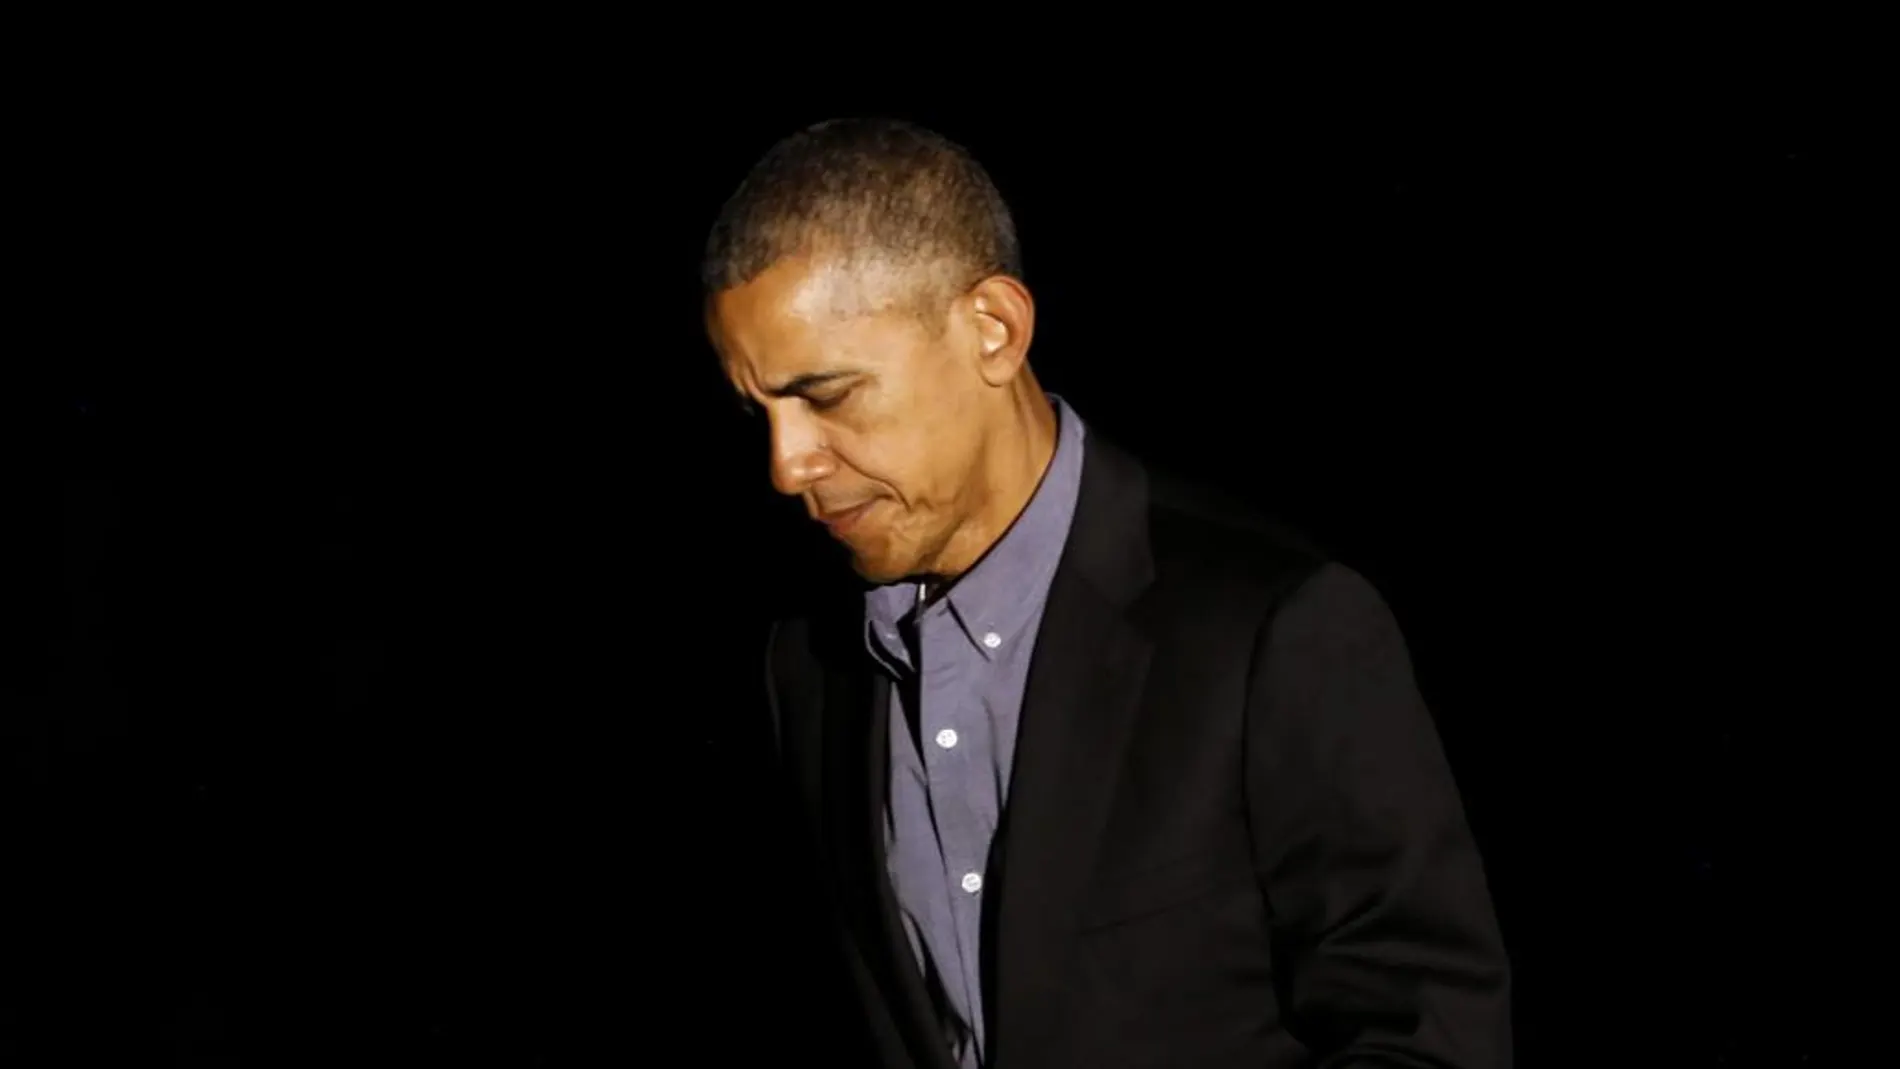 El presidente de Estados Unidos, Barack Obama, a su vuelta a la Casa Blanca, tras un viaje a Europa